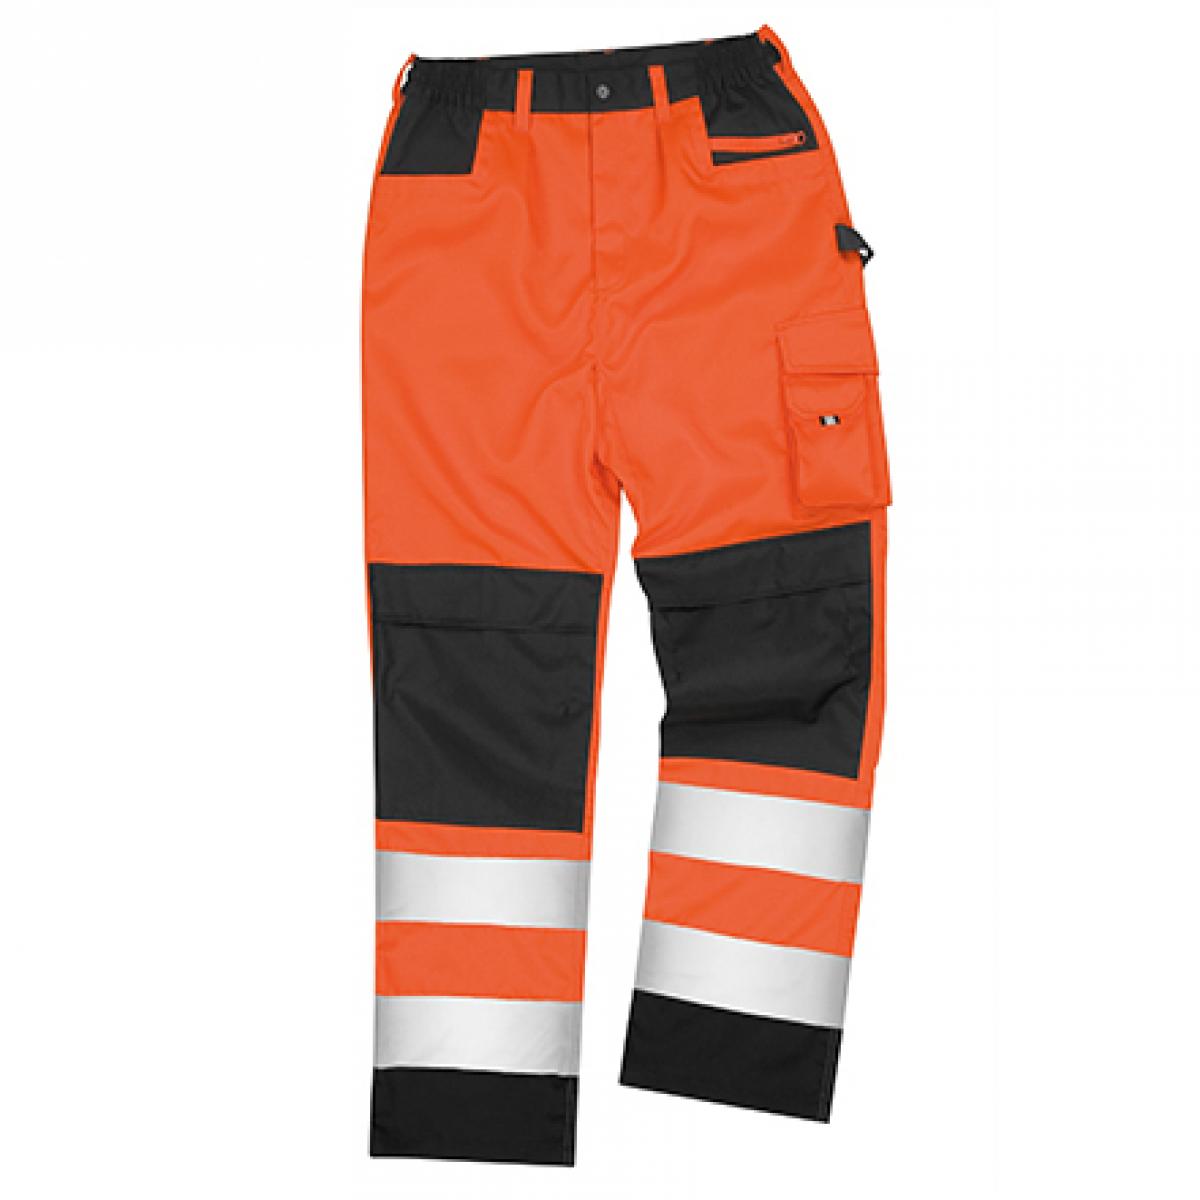 Hersteller: Result Herstellernummer: R327X Artikelbezeichnung: Herren Safety Cargo Sicherheitshose / EN20471:2013 Klasse 2 Farbe: Fluorescent Orange